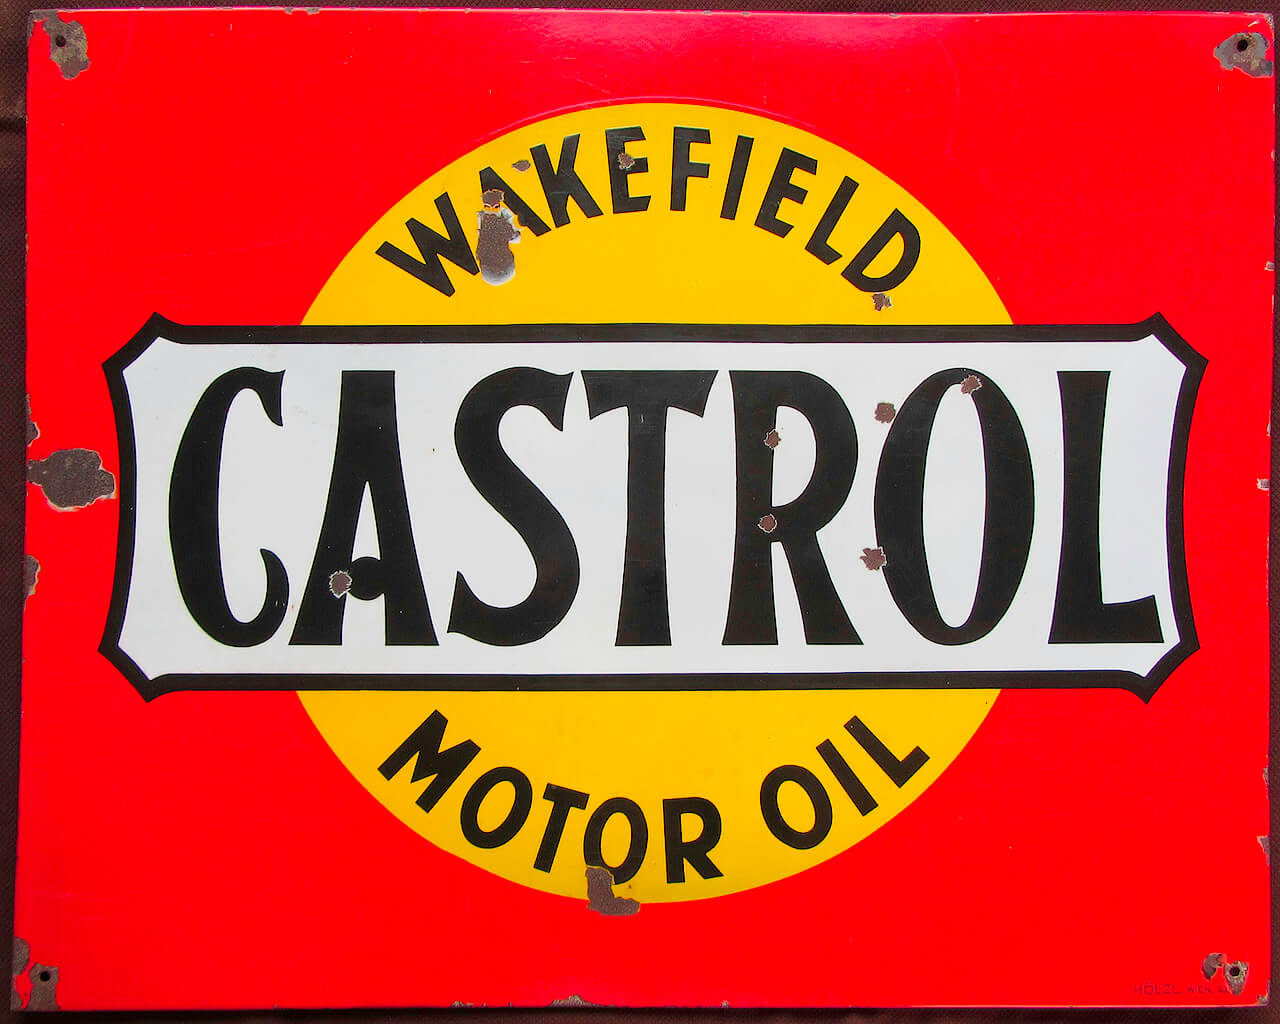 Wakefield-Castrol